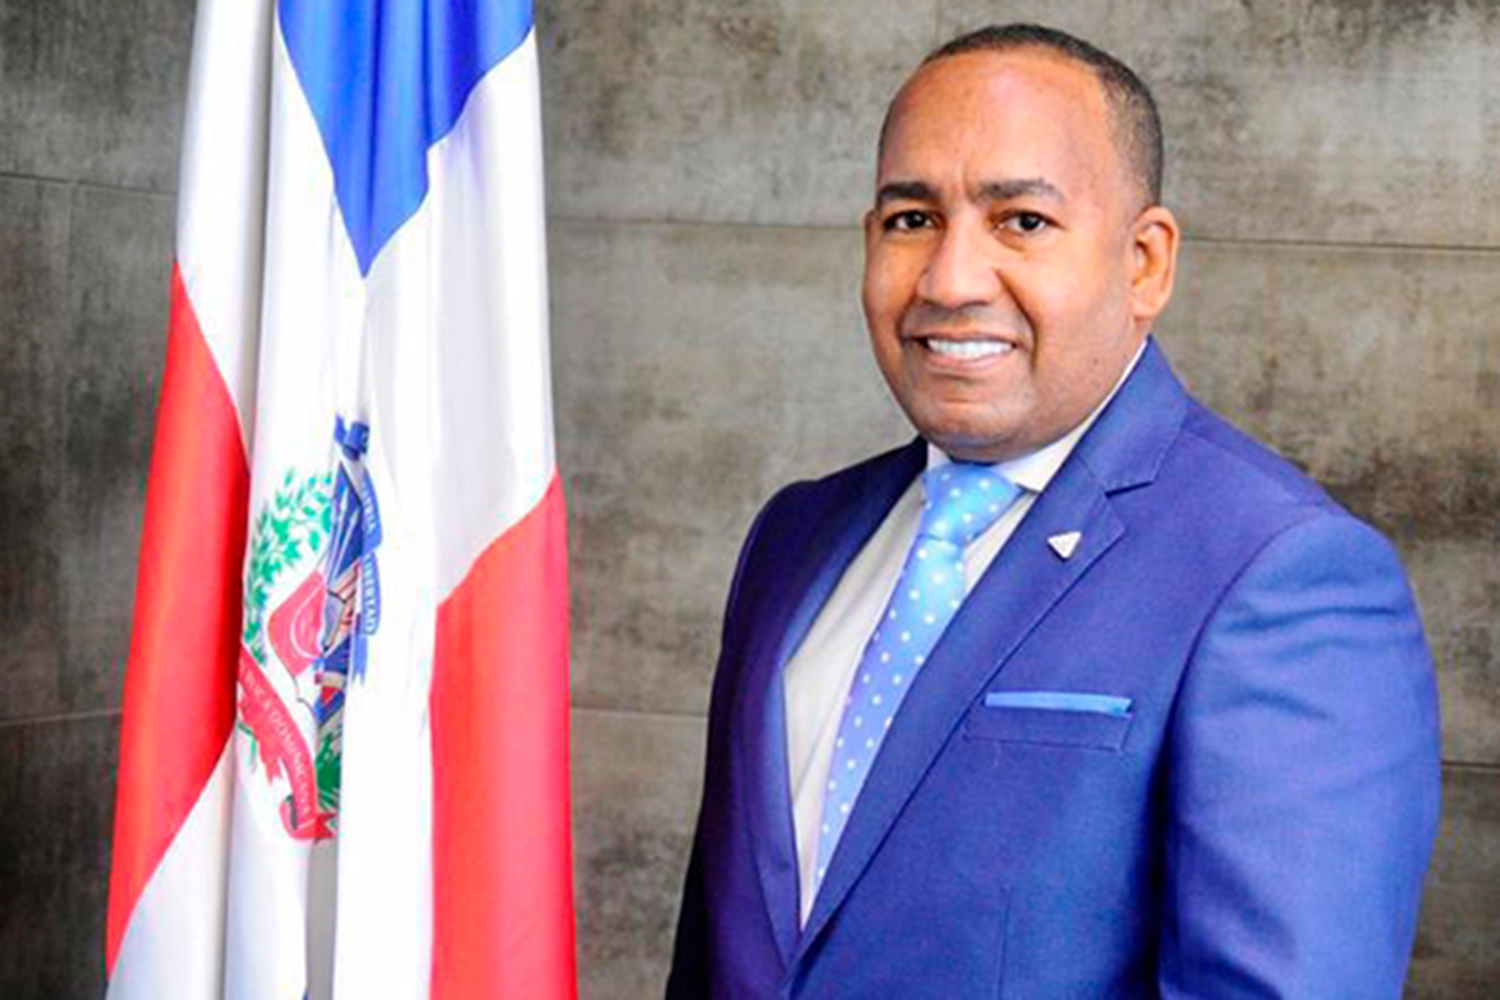 seguridad aeroportuaria: Víctor Pichardo, director ejecutivo del Departamento Aeroportuario de la República Dominicana